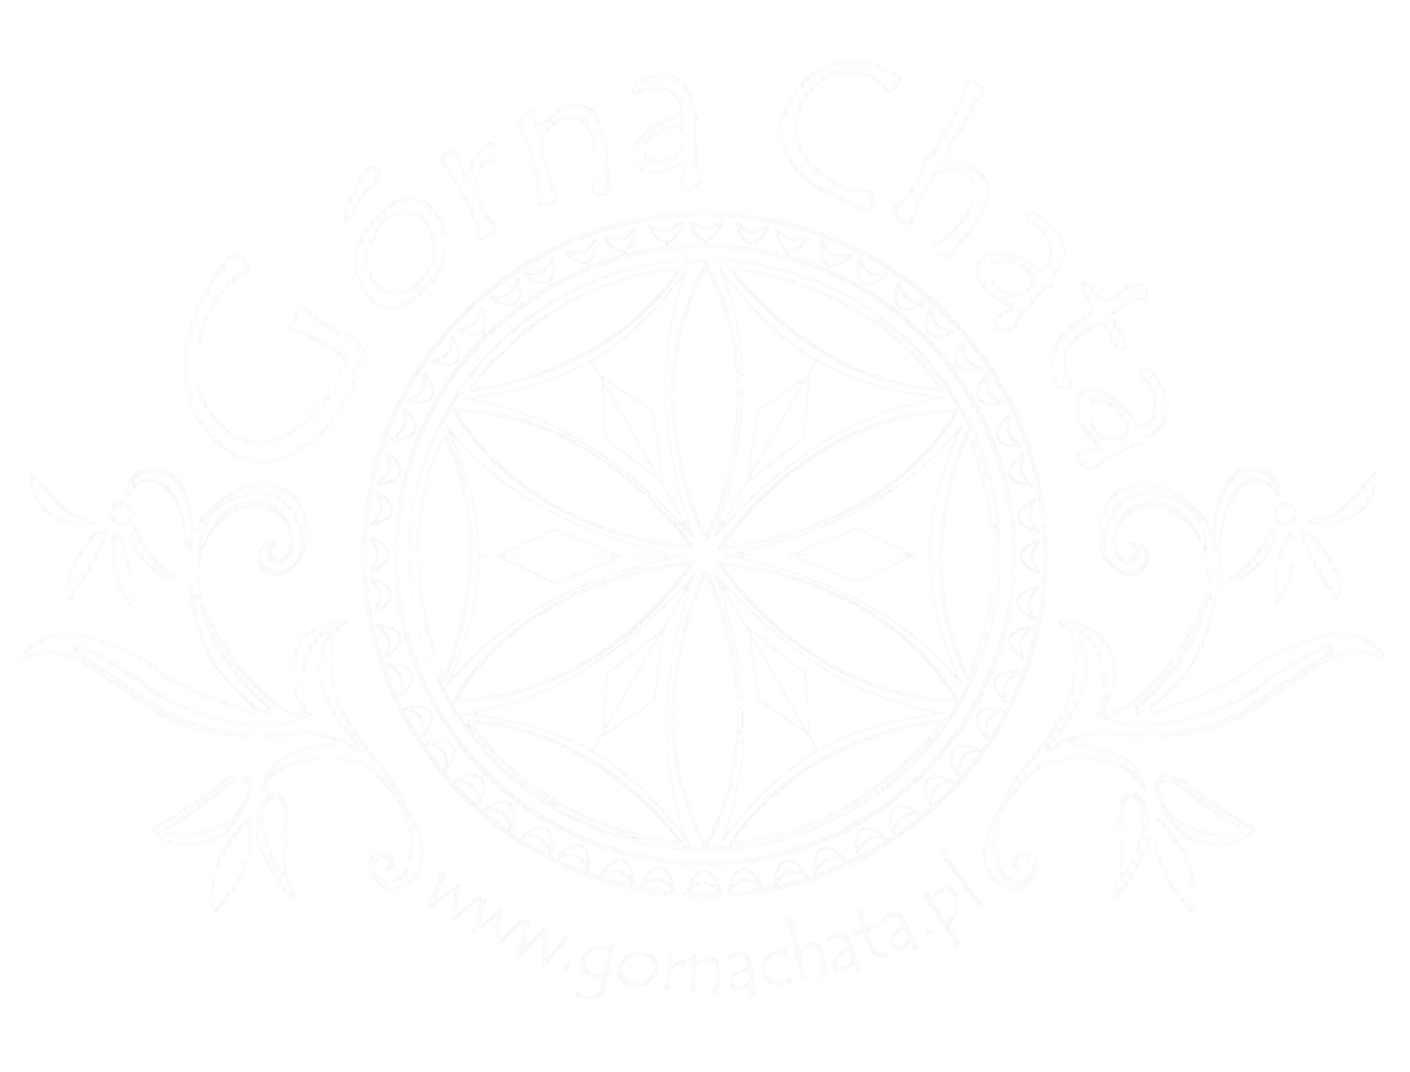 Poland Górna Chata Logo